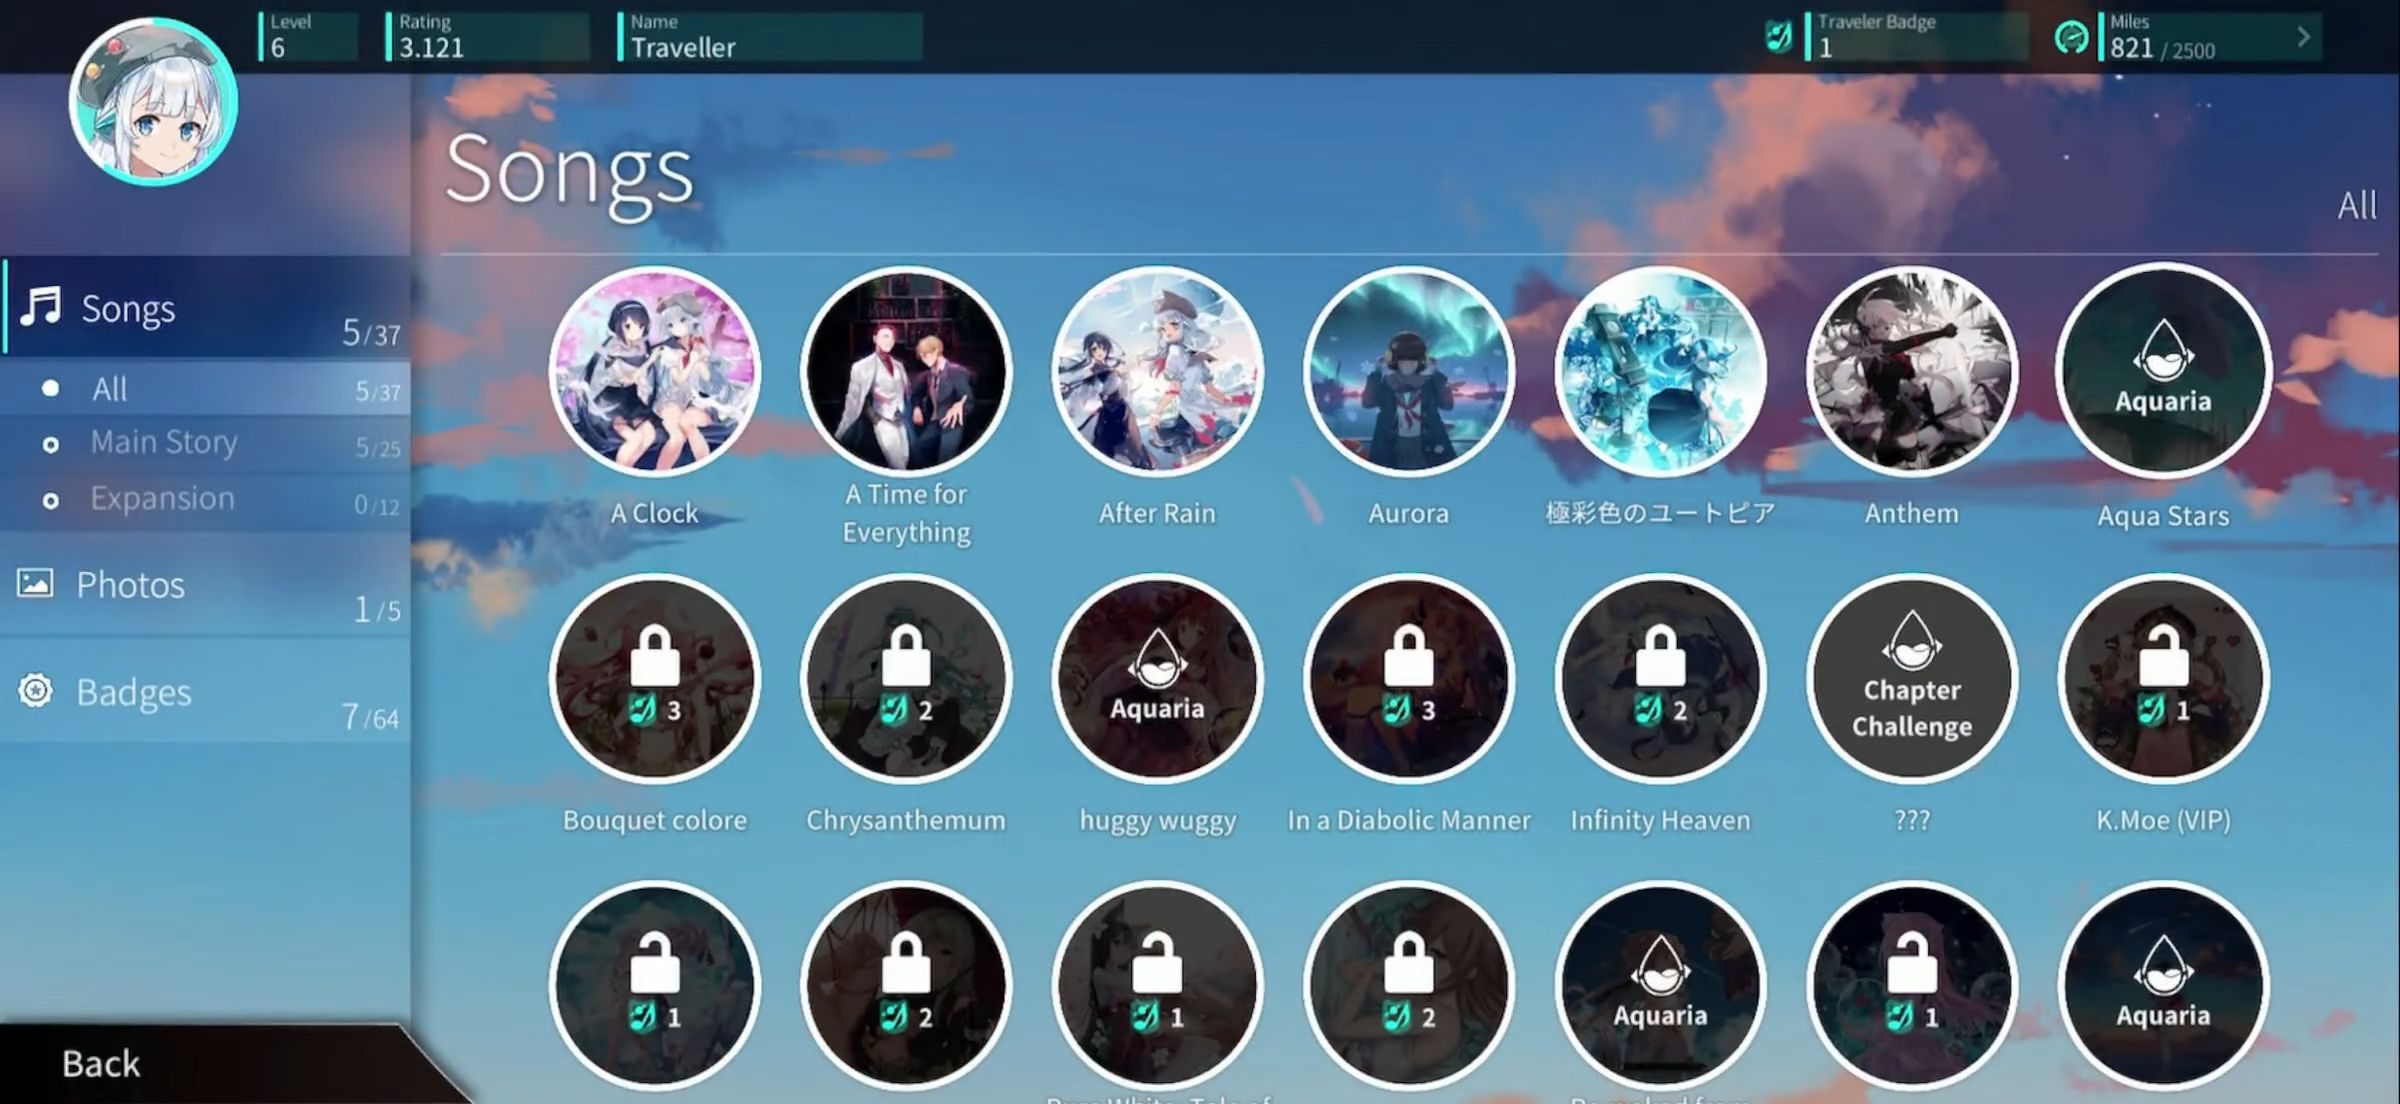 Rotaeno - Android game screenshots.